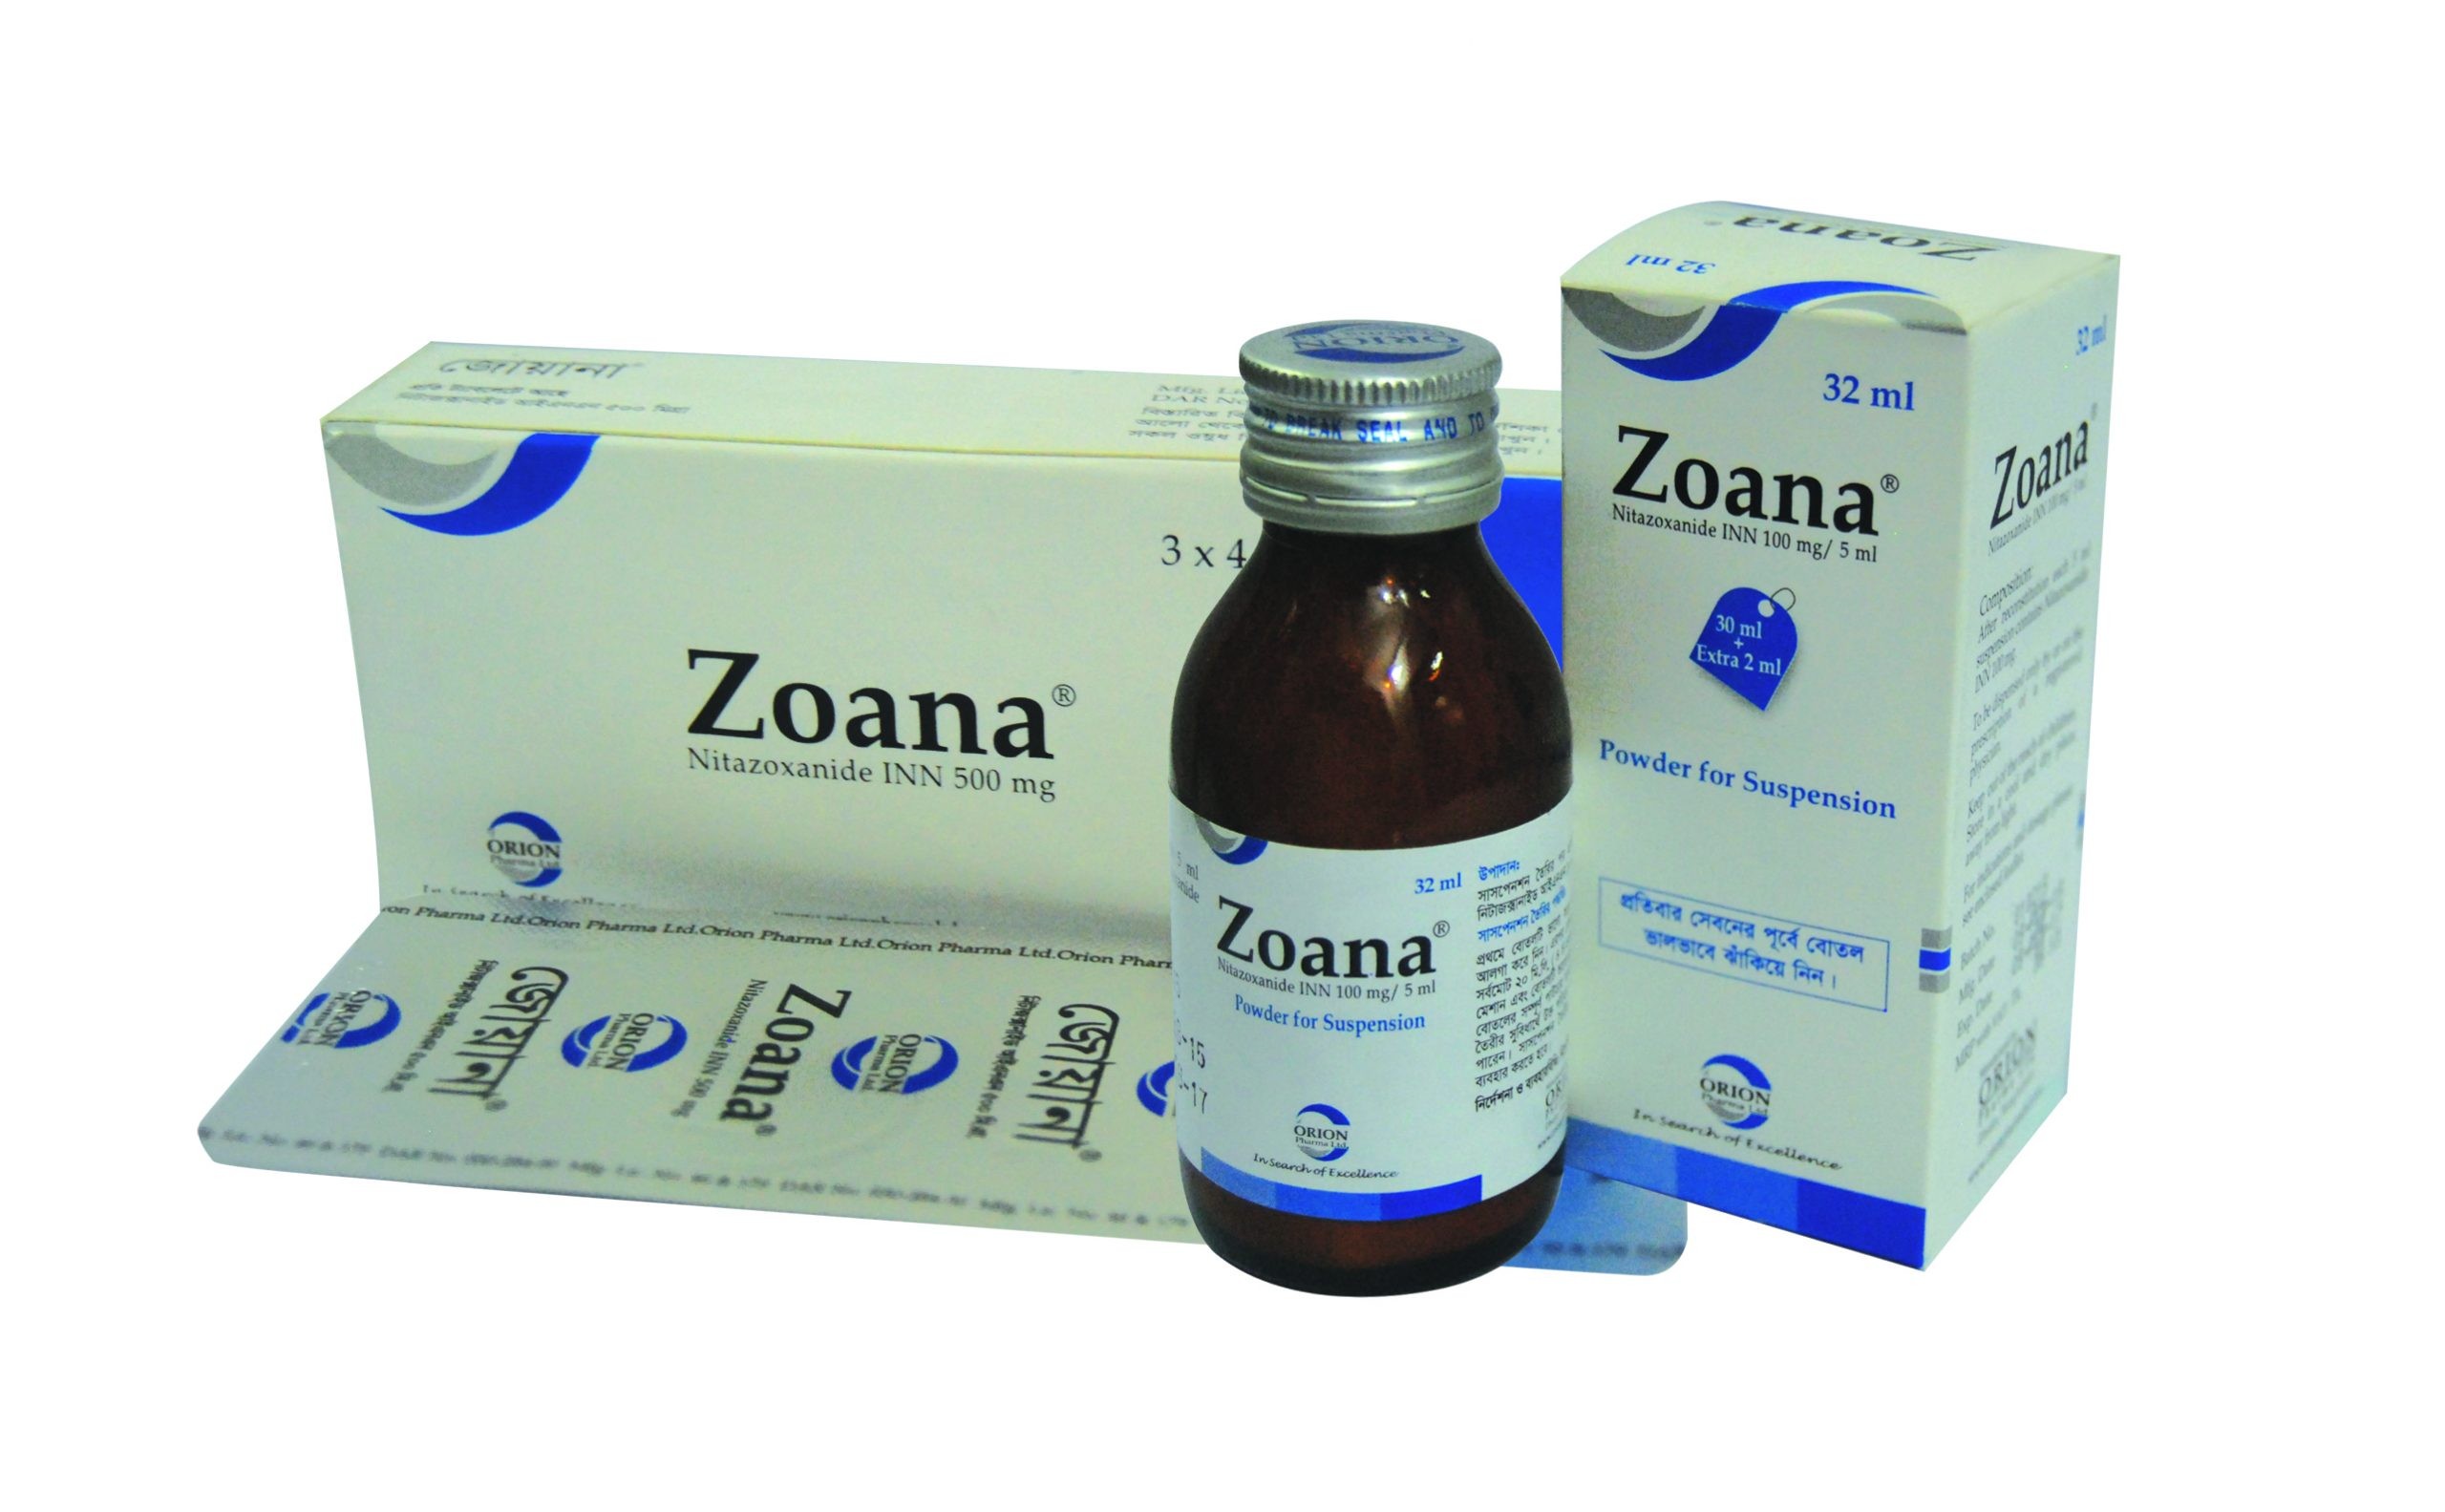 Zoana(100 mg/5 ml)